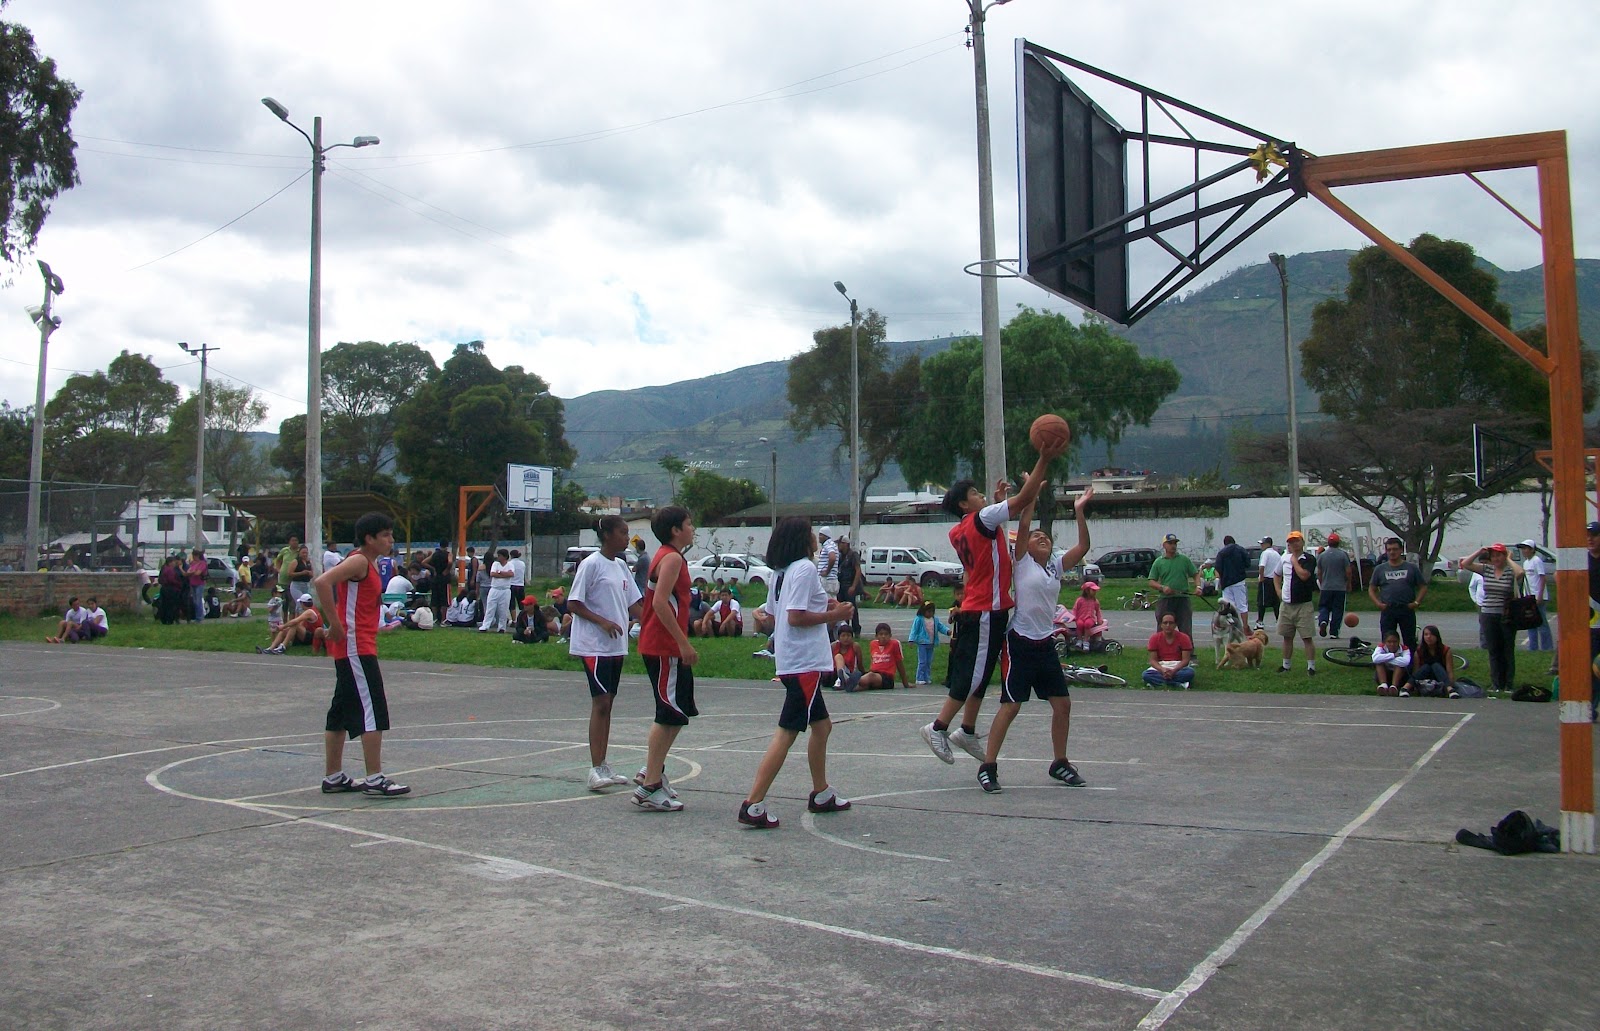 Jugar baloncesto o basket influye en el crecimiento? - Club Ricardo Palma  de la Marina de Guerra – Centro campestre y recreacional en Chosica